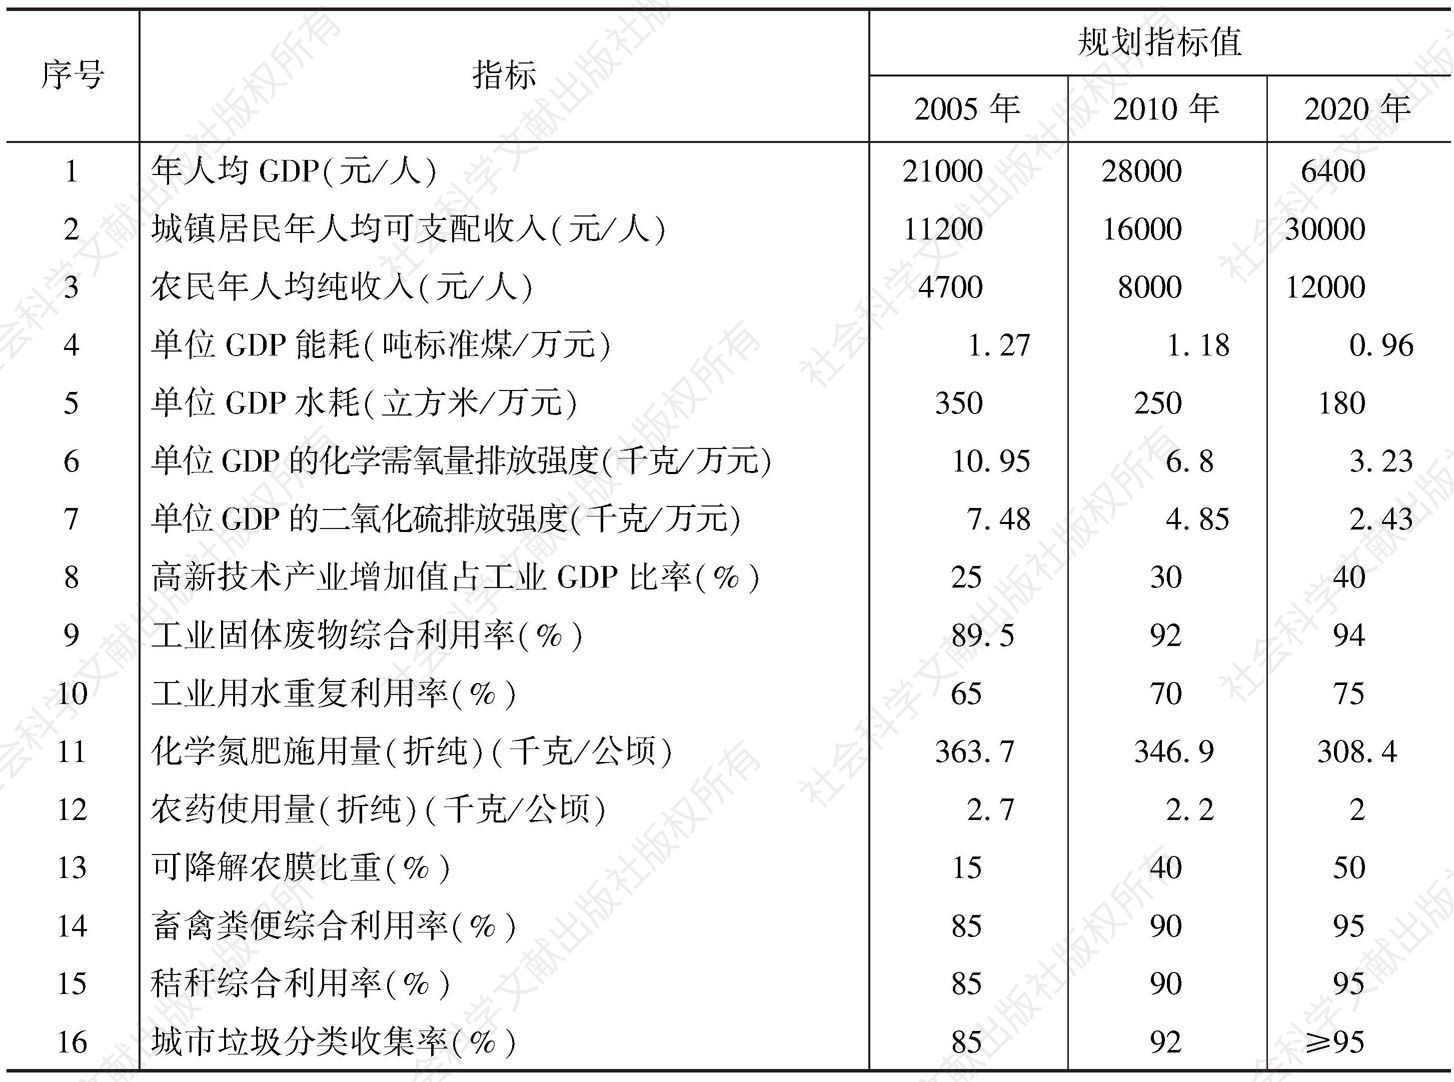 表15-1 江苏省循环经济发展的主要指标